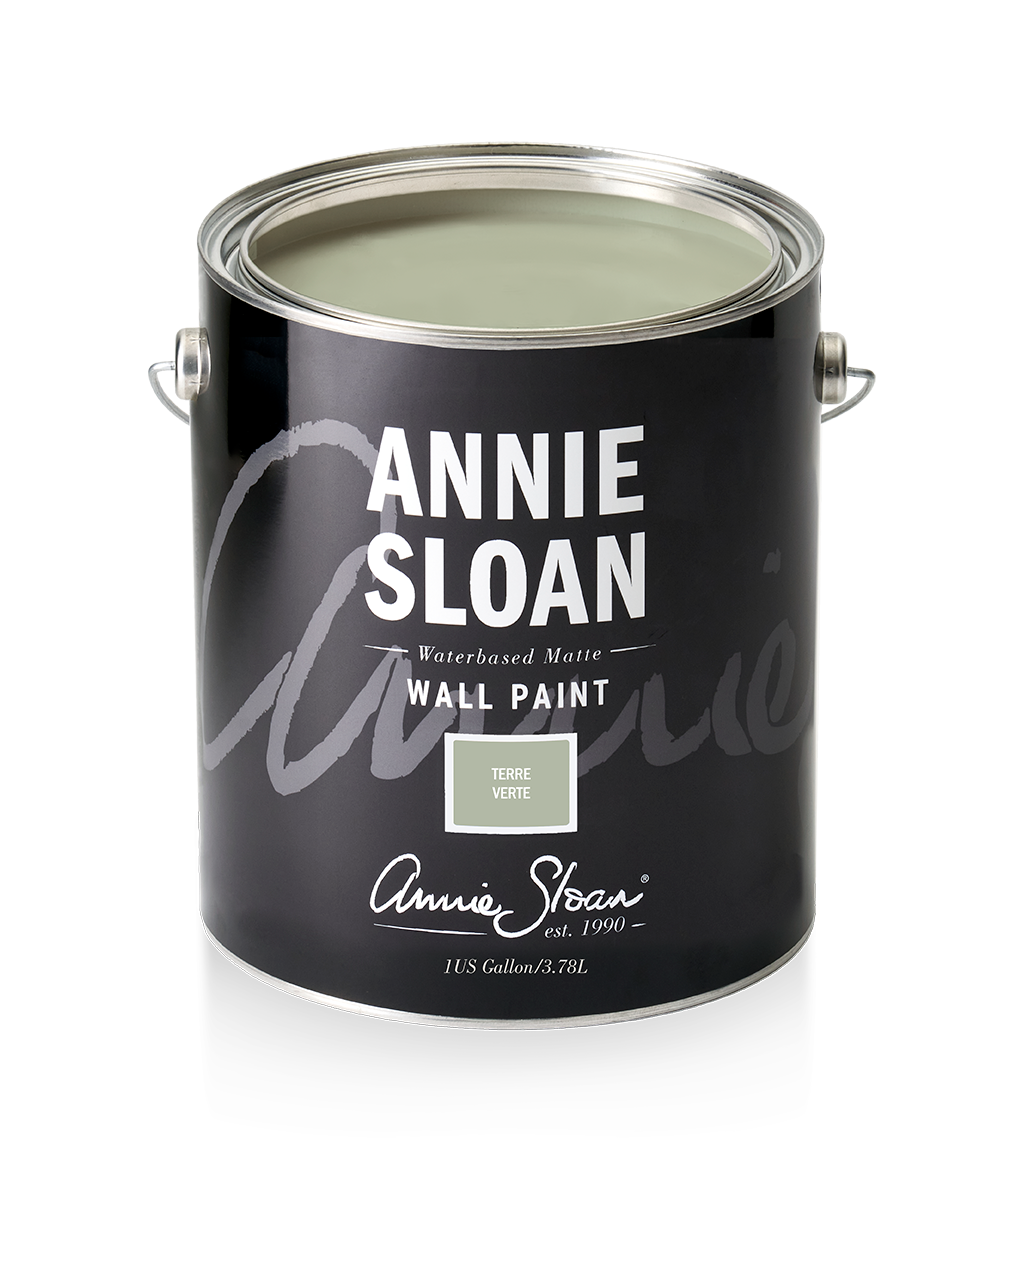 Annie Sloan Wall Paint Terre Verte, 1 Gallon